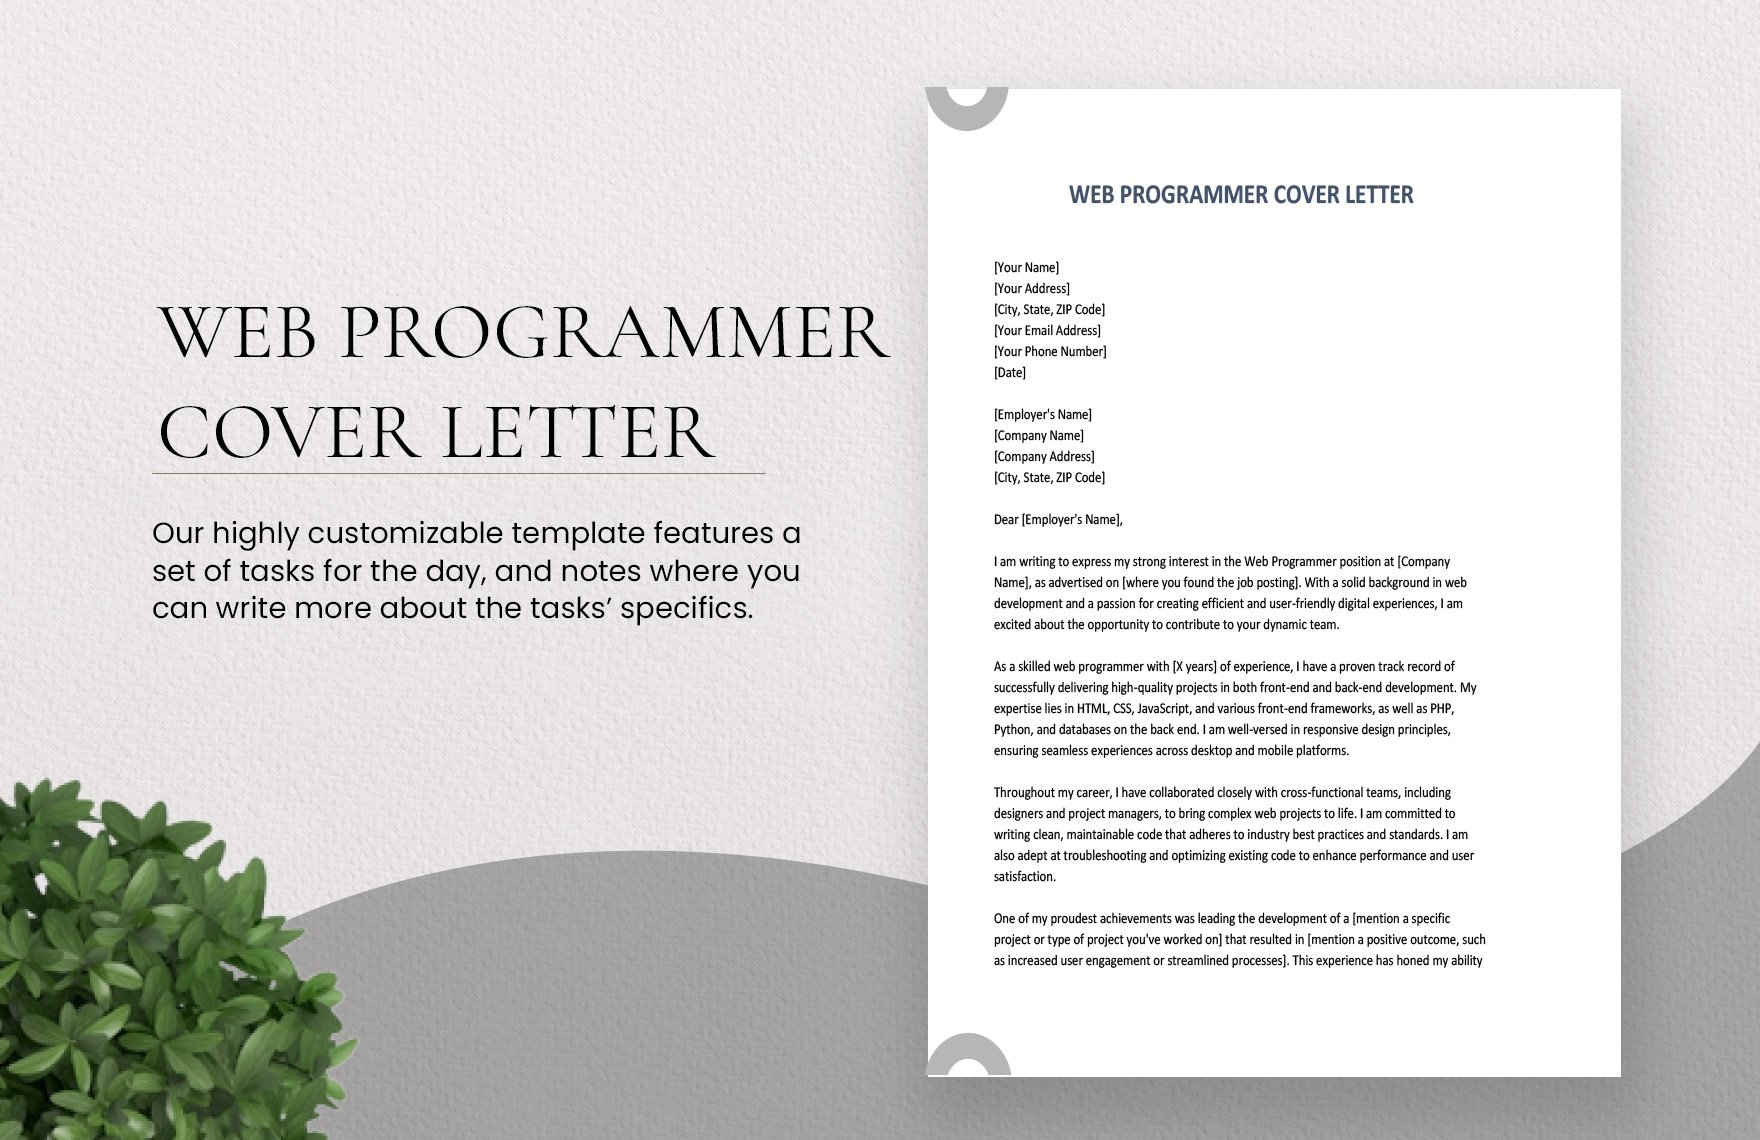 Web Programmer Cover Letter